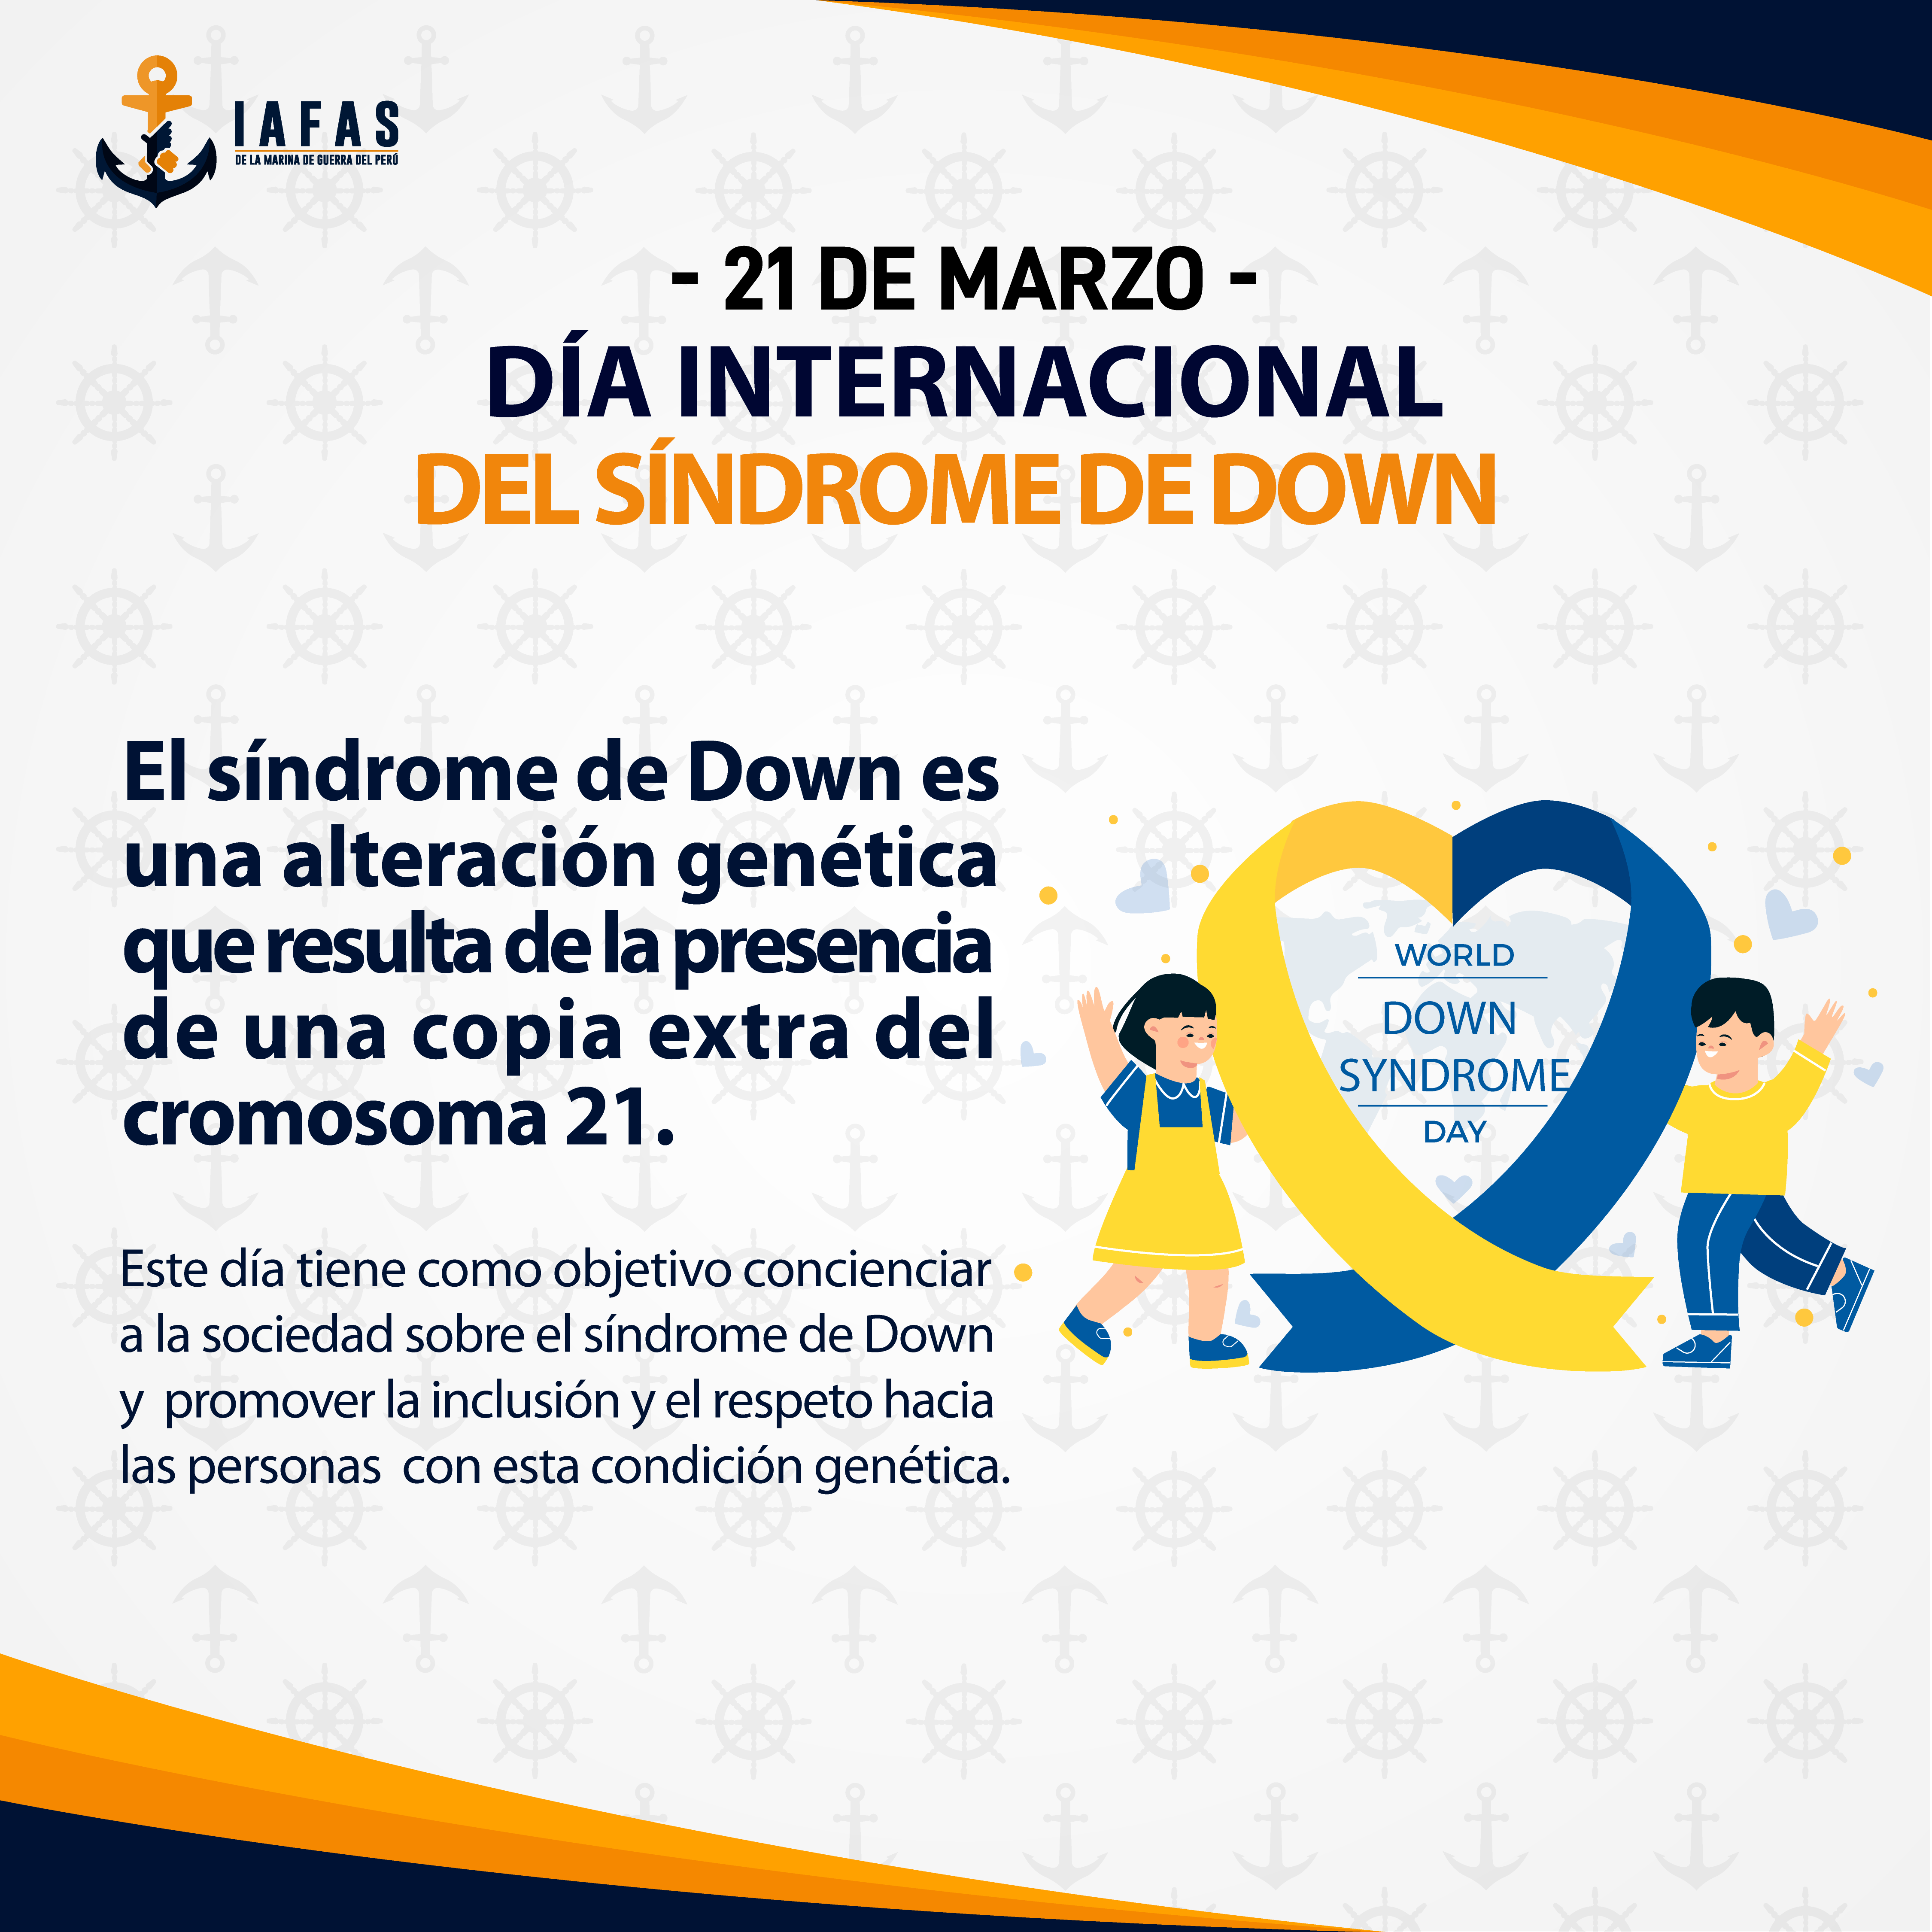 Día internacional del síndrome de down